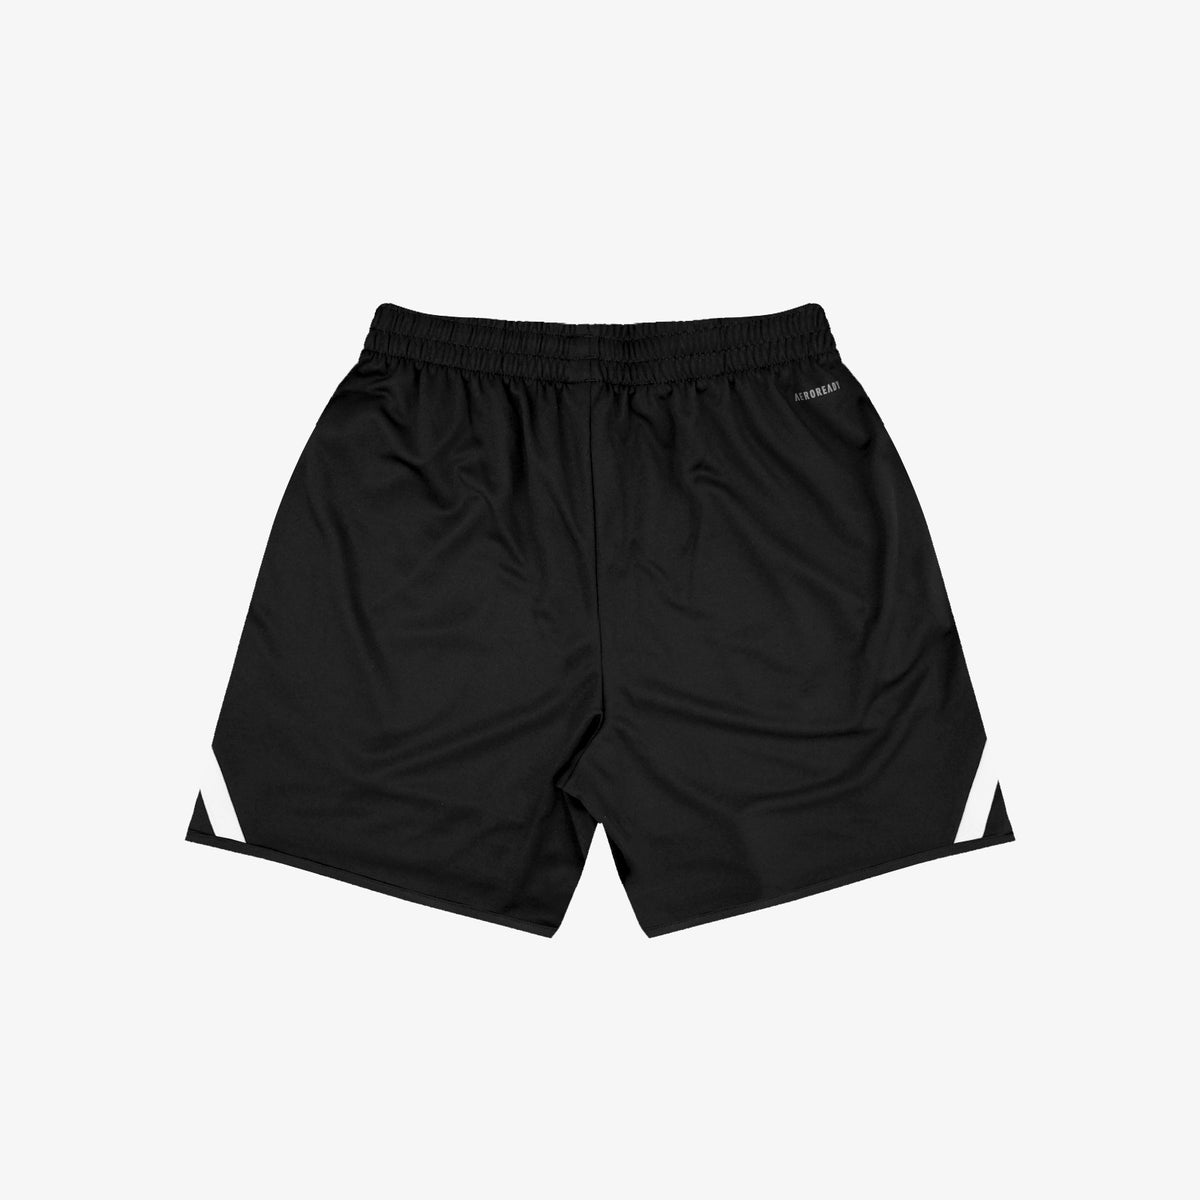 Pro Block Shorts - Black/White